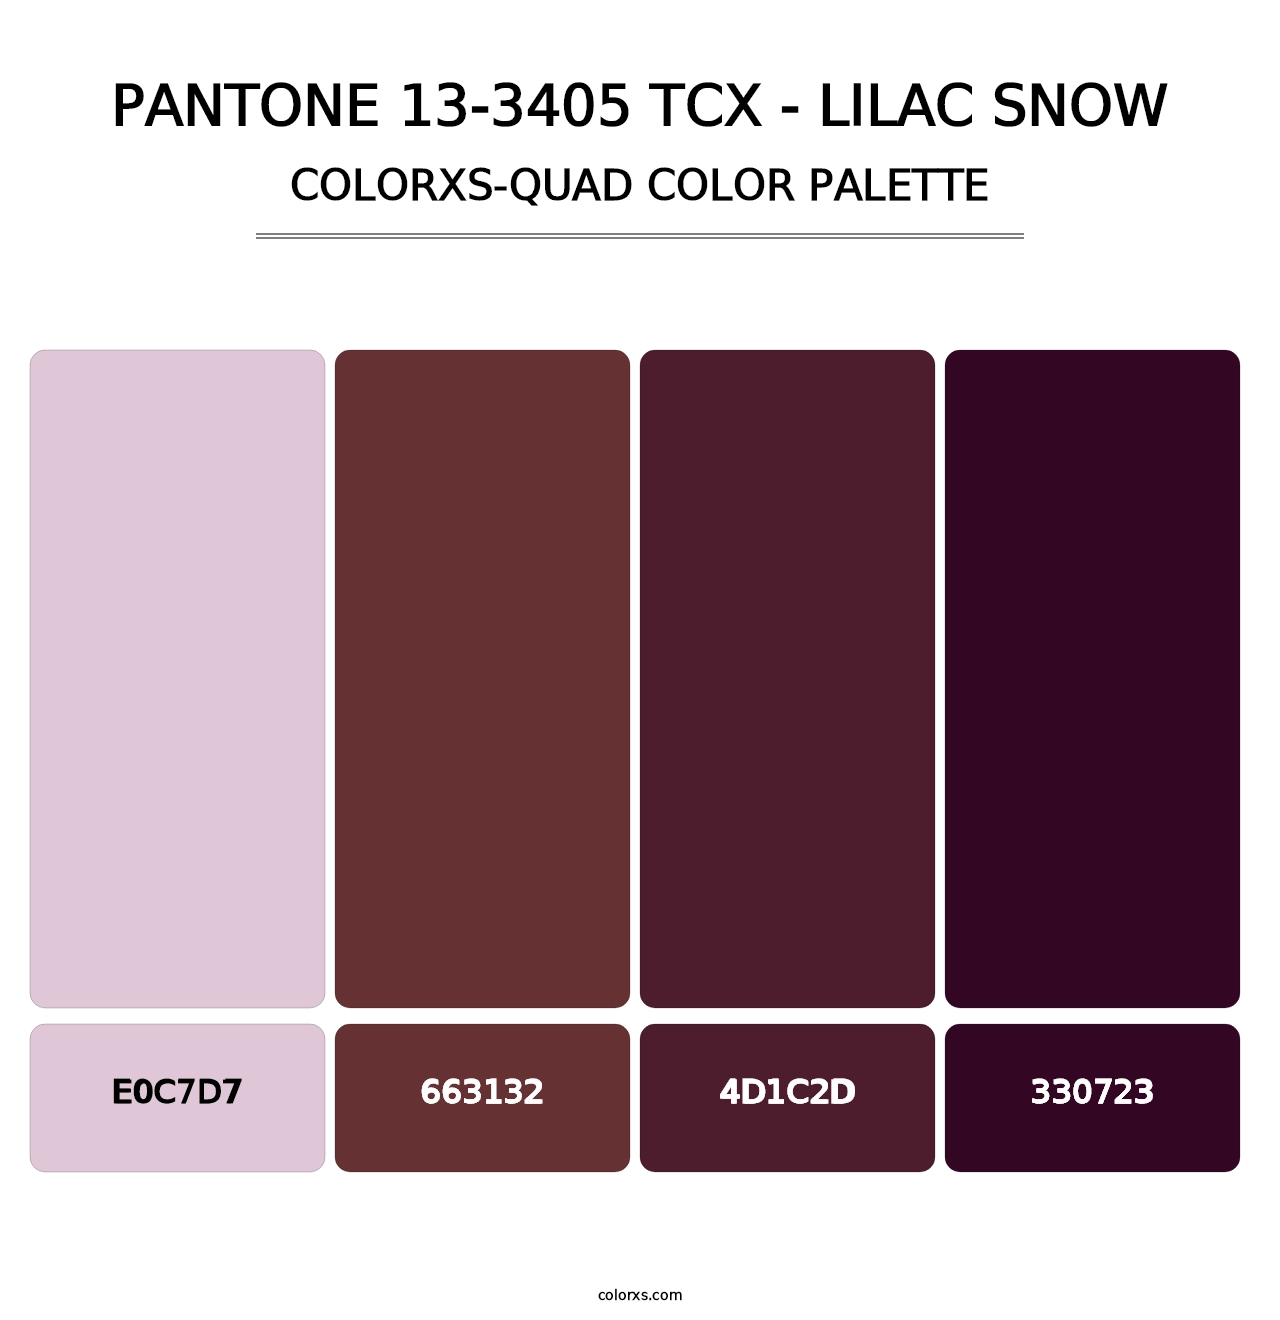 PANTONE 13-3405 TCX - Lilac Snow - Colorxs Quad Palette